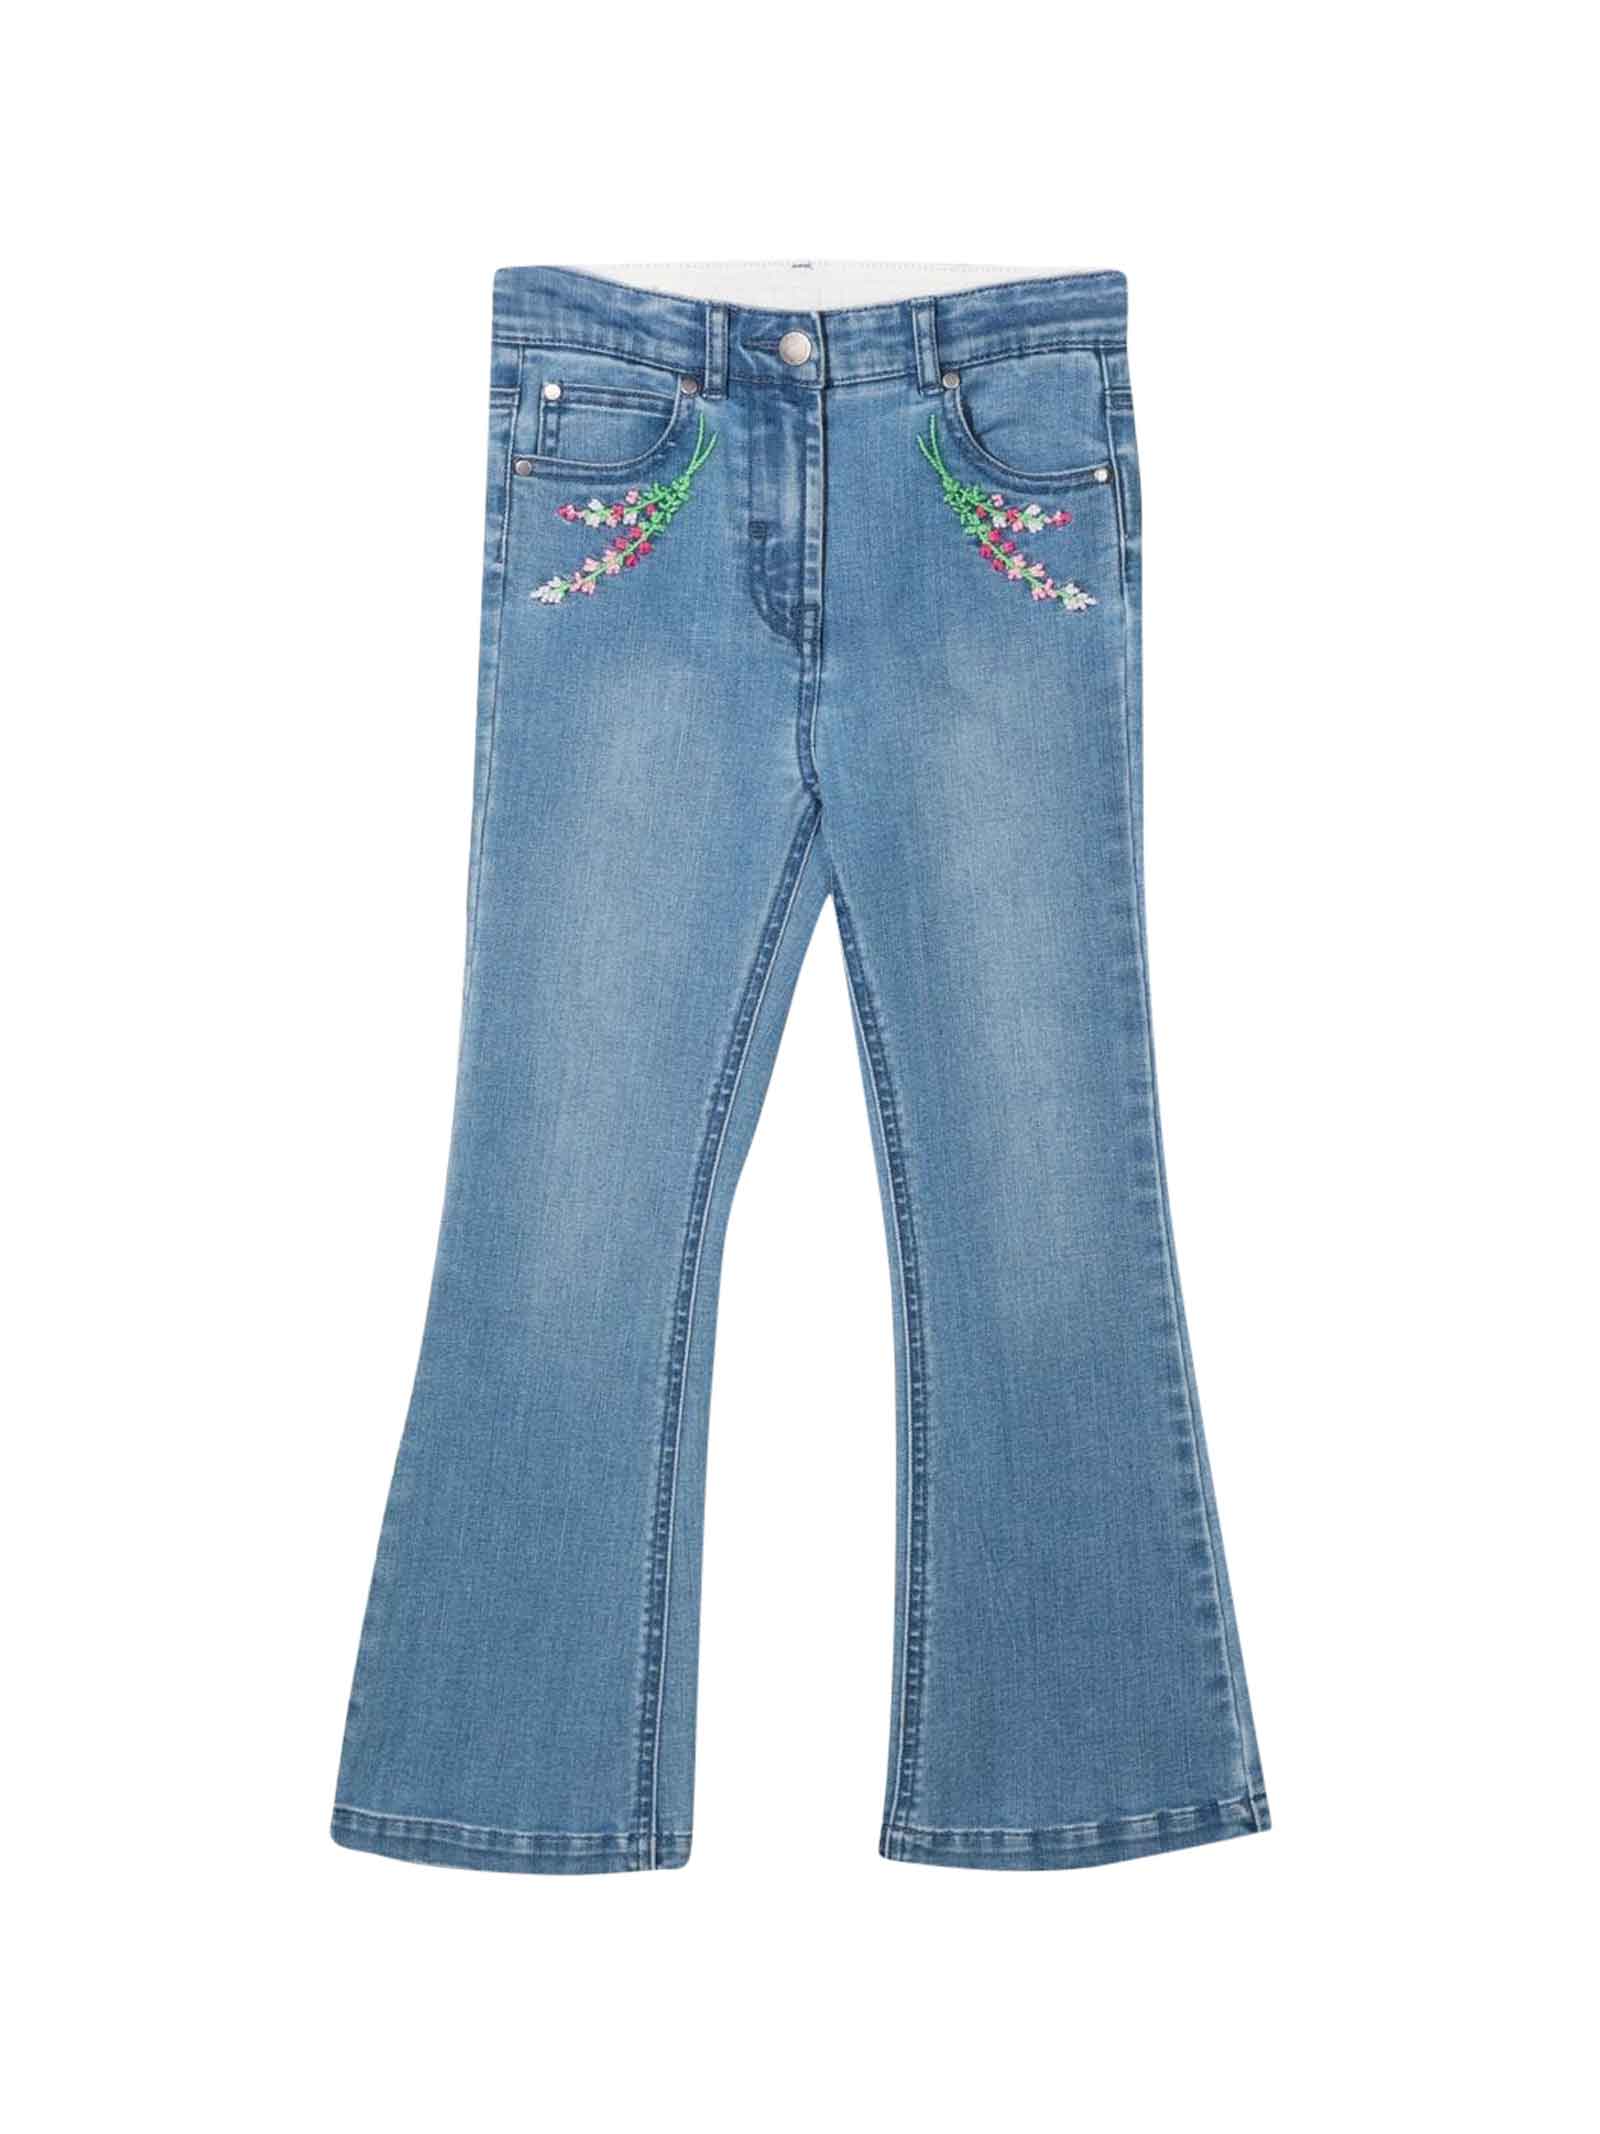 Stella McCartney Kids Light Girl Jeans